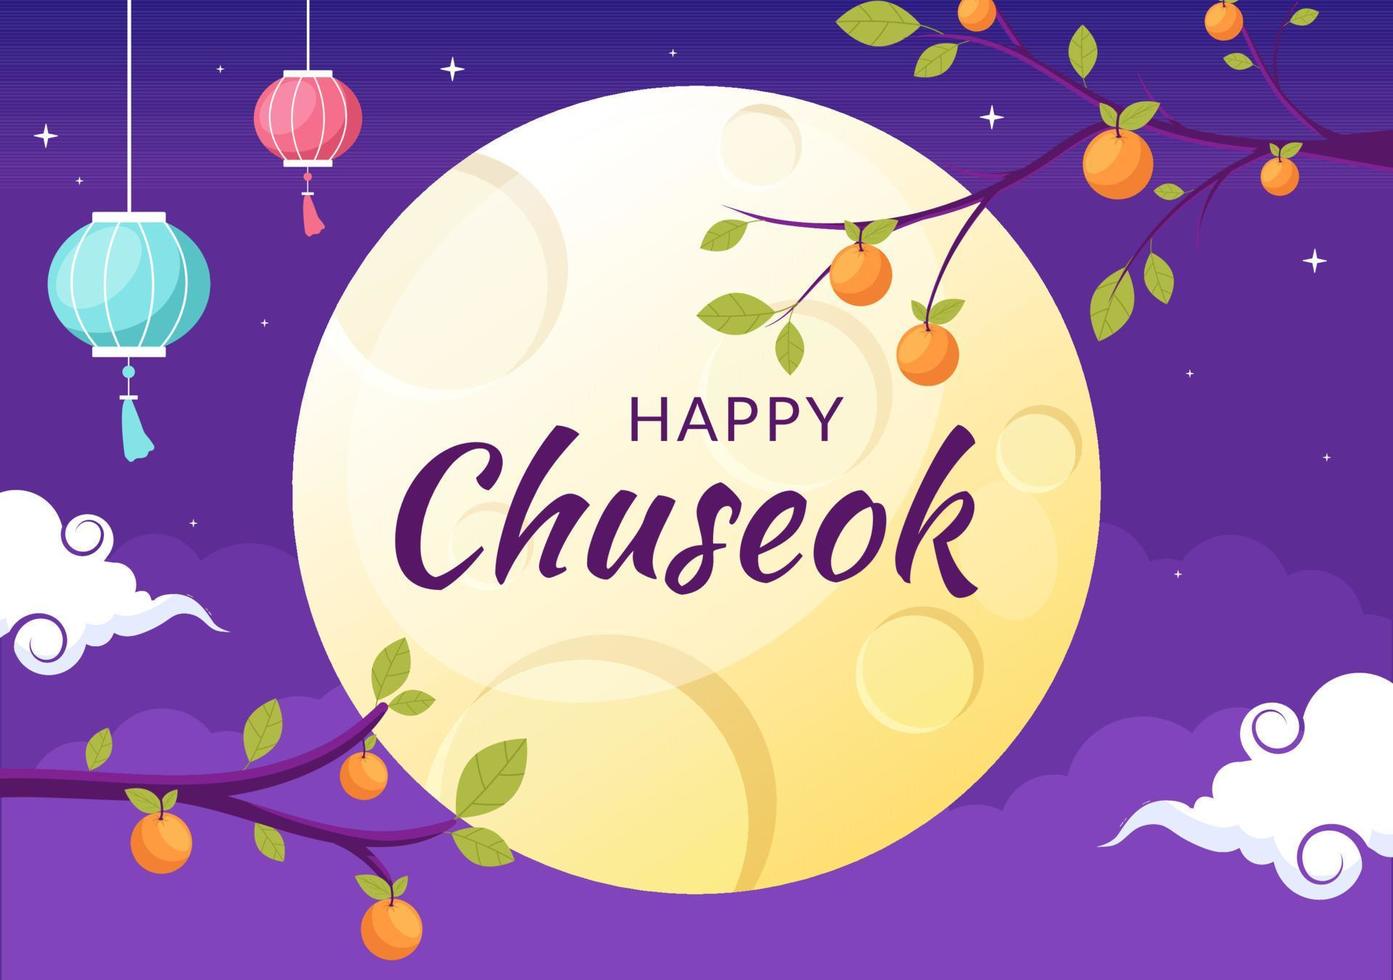 gelukkige chuseok-dag in korea voor dankzegging met kalligrafietekst, volle maan en hemellandschap in platte cartoonillustratie vector